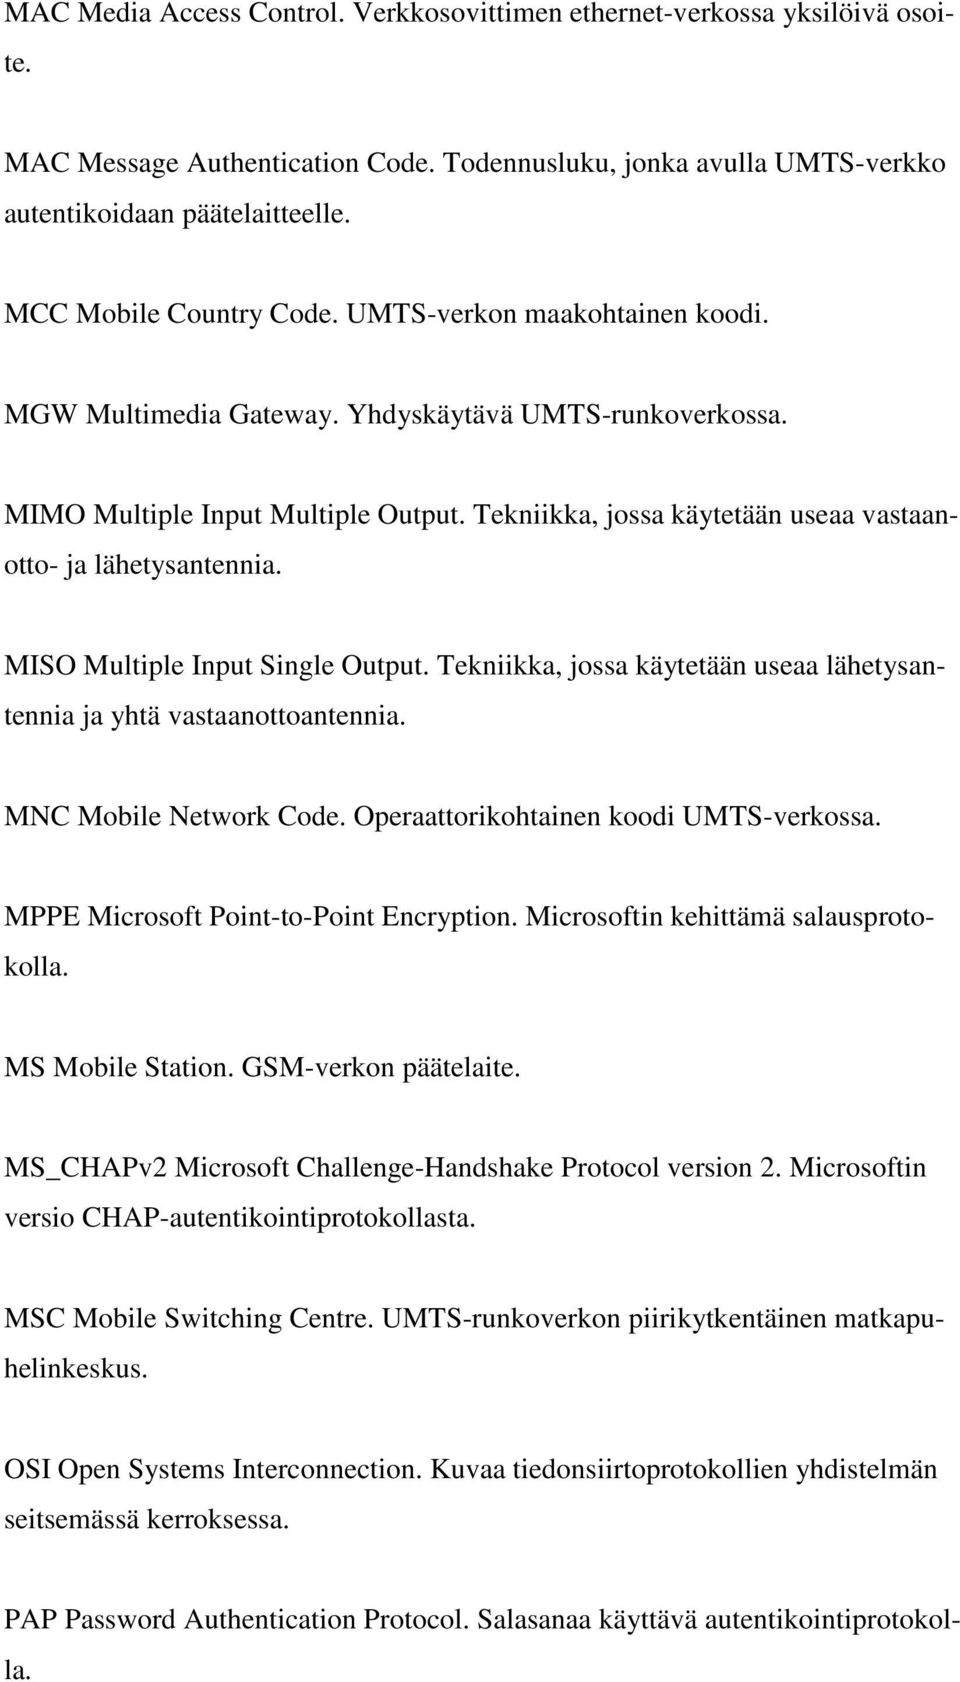 Tekniikka, jossa käytetään useaa vastaanotto- ja lähetysantennia. MISO Multiple Input Single Output. Tekniikka, jossa käytetään useaa lähetysantennia ja yhtä vastaanottoantennia.